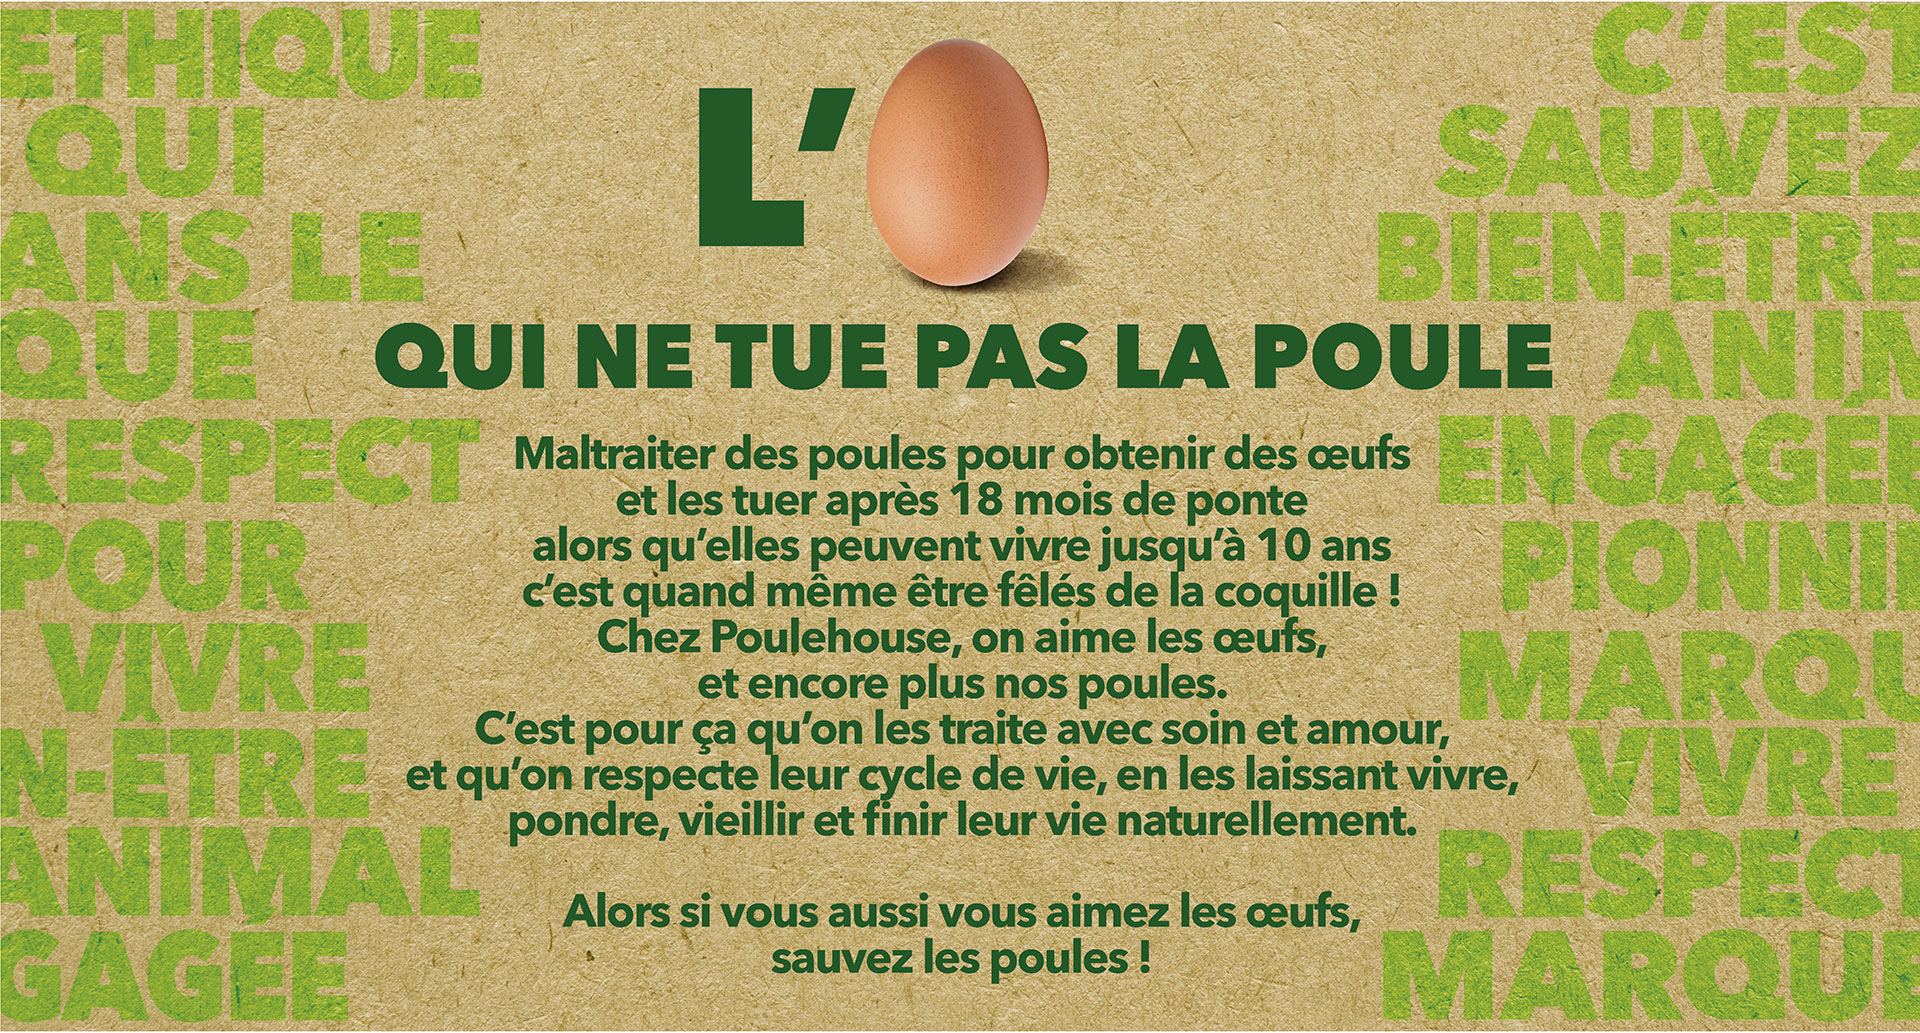 Manifesto de la marque d'œufs Poulehouse